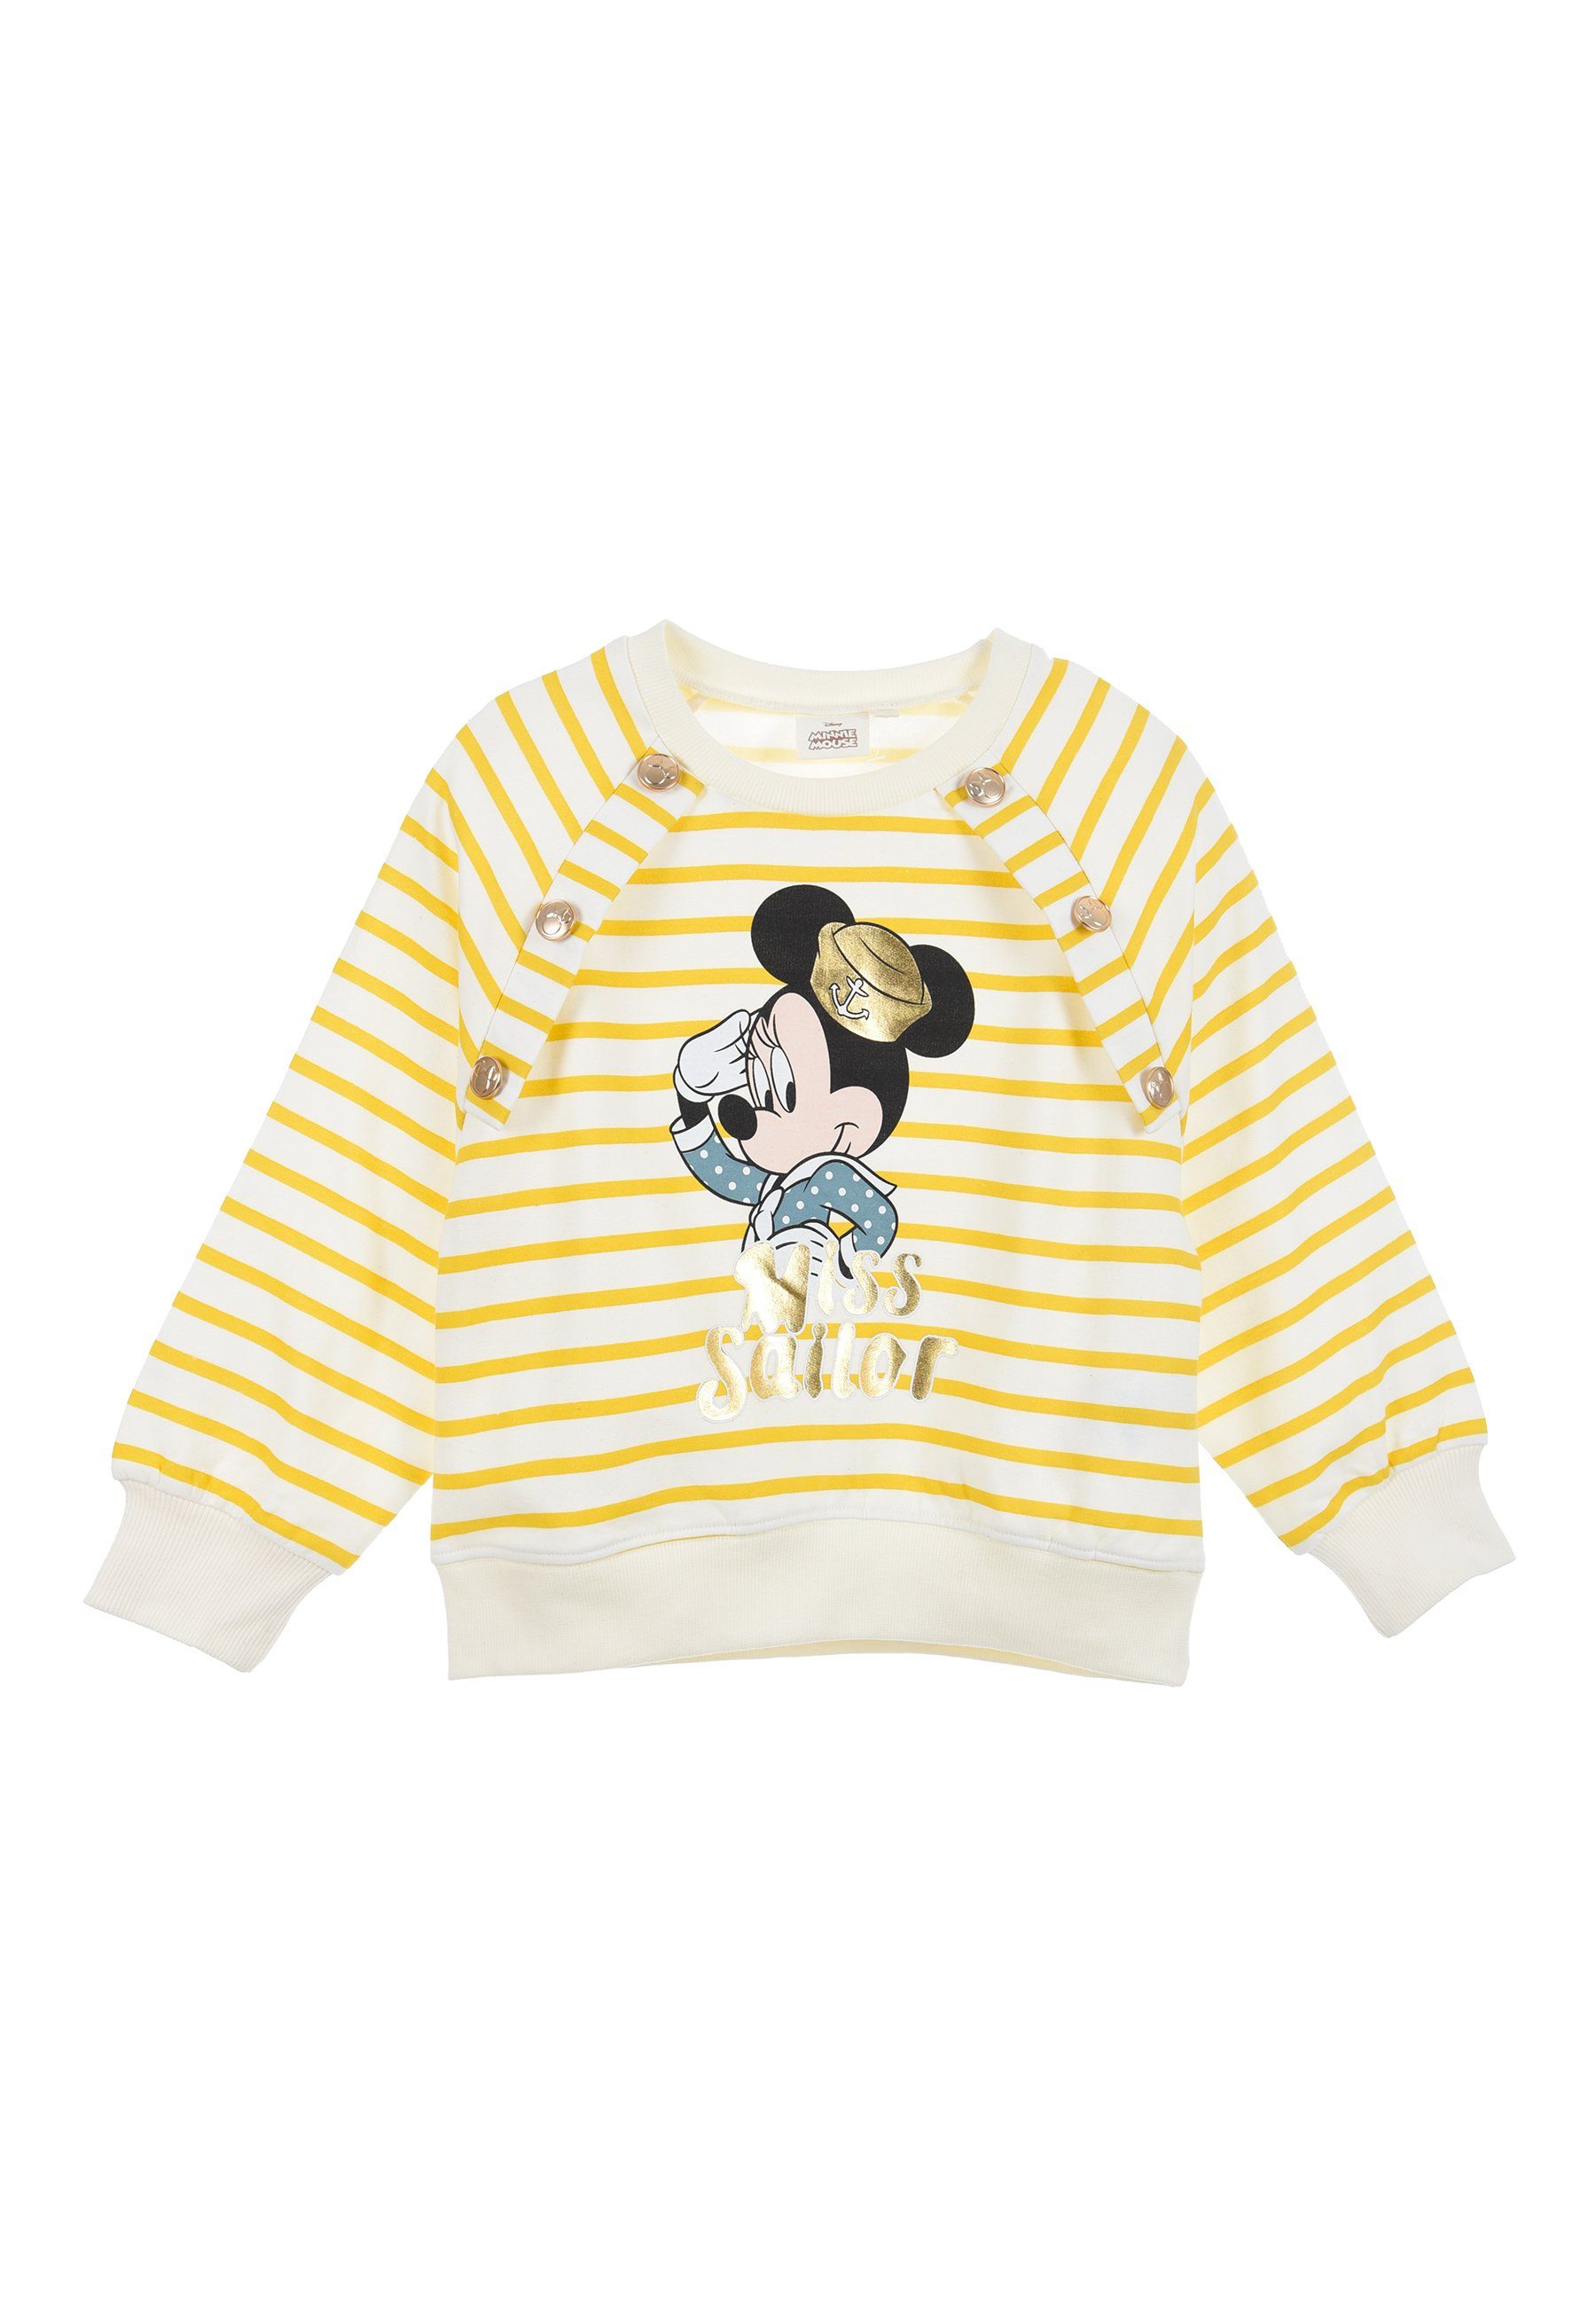 Oberteil Sweatshirt Mini Mädchen Gelb Maus Minnie Disney Mouse Sweatshirt Kinder